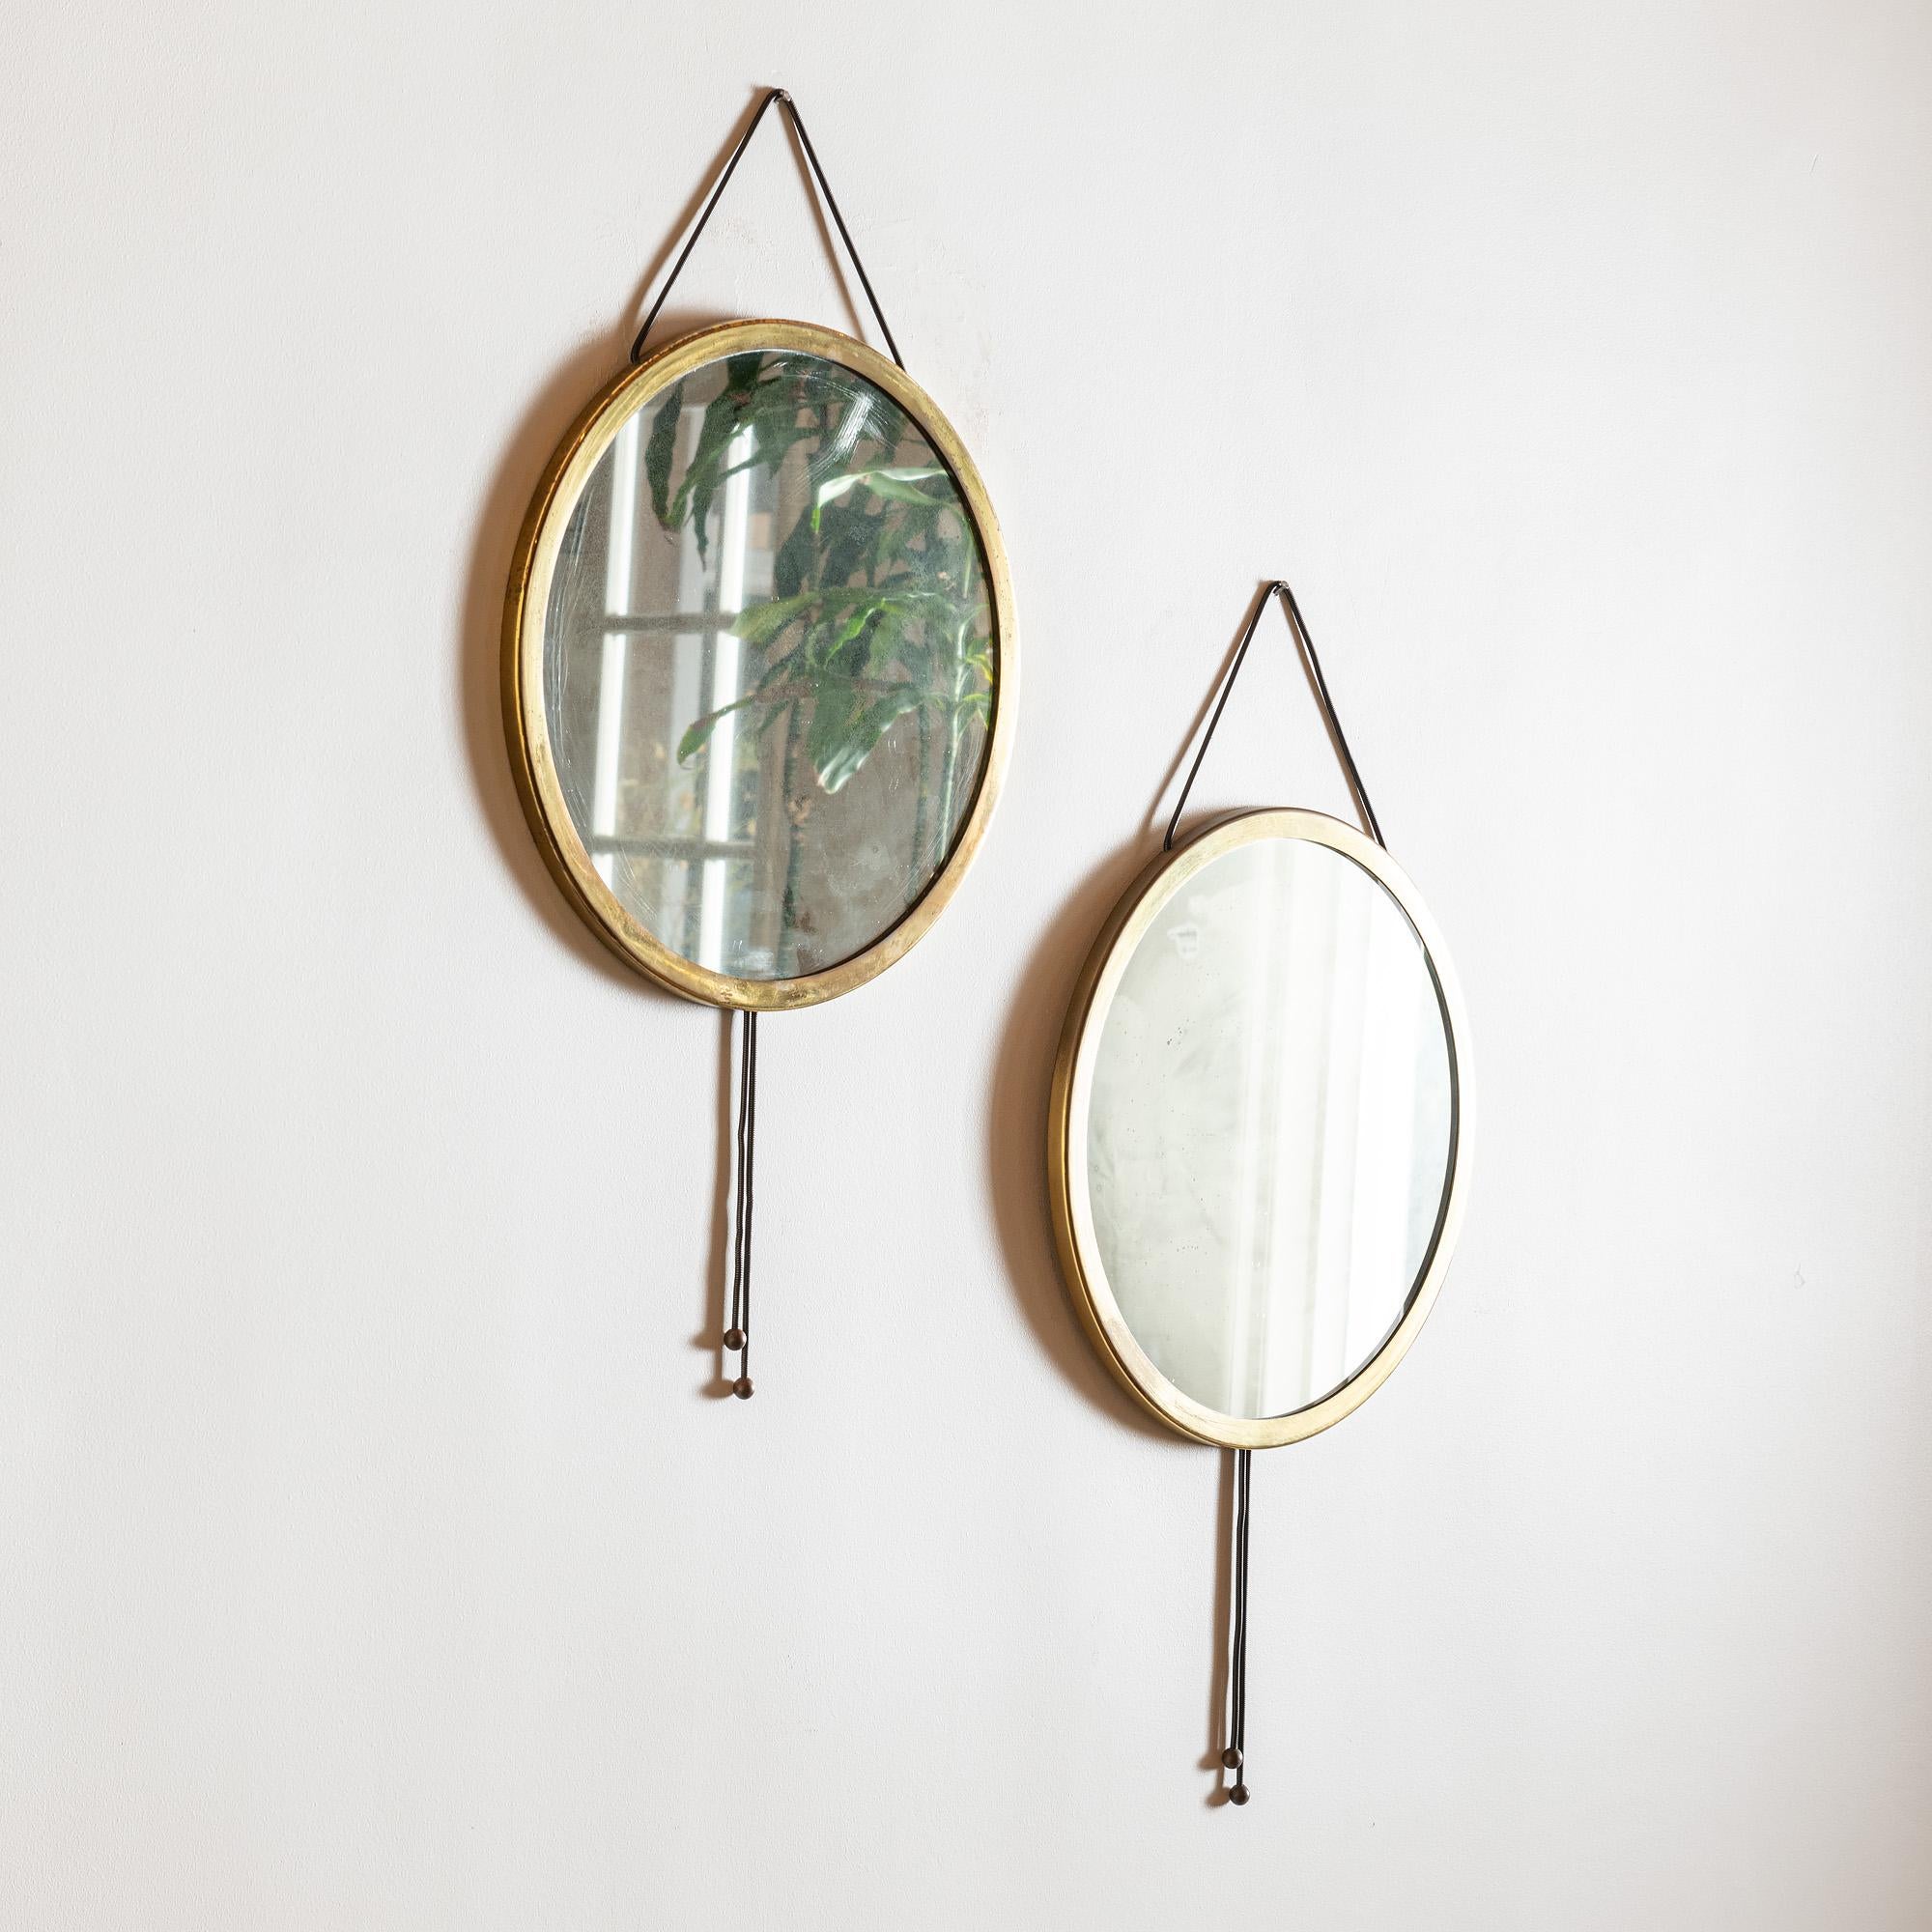 A pair of elegant mirrors by Corrado Corradi Dell' Acqua for Azucena in copper and brass, Italy, 1960s.

Mirror diameter is 17.75